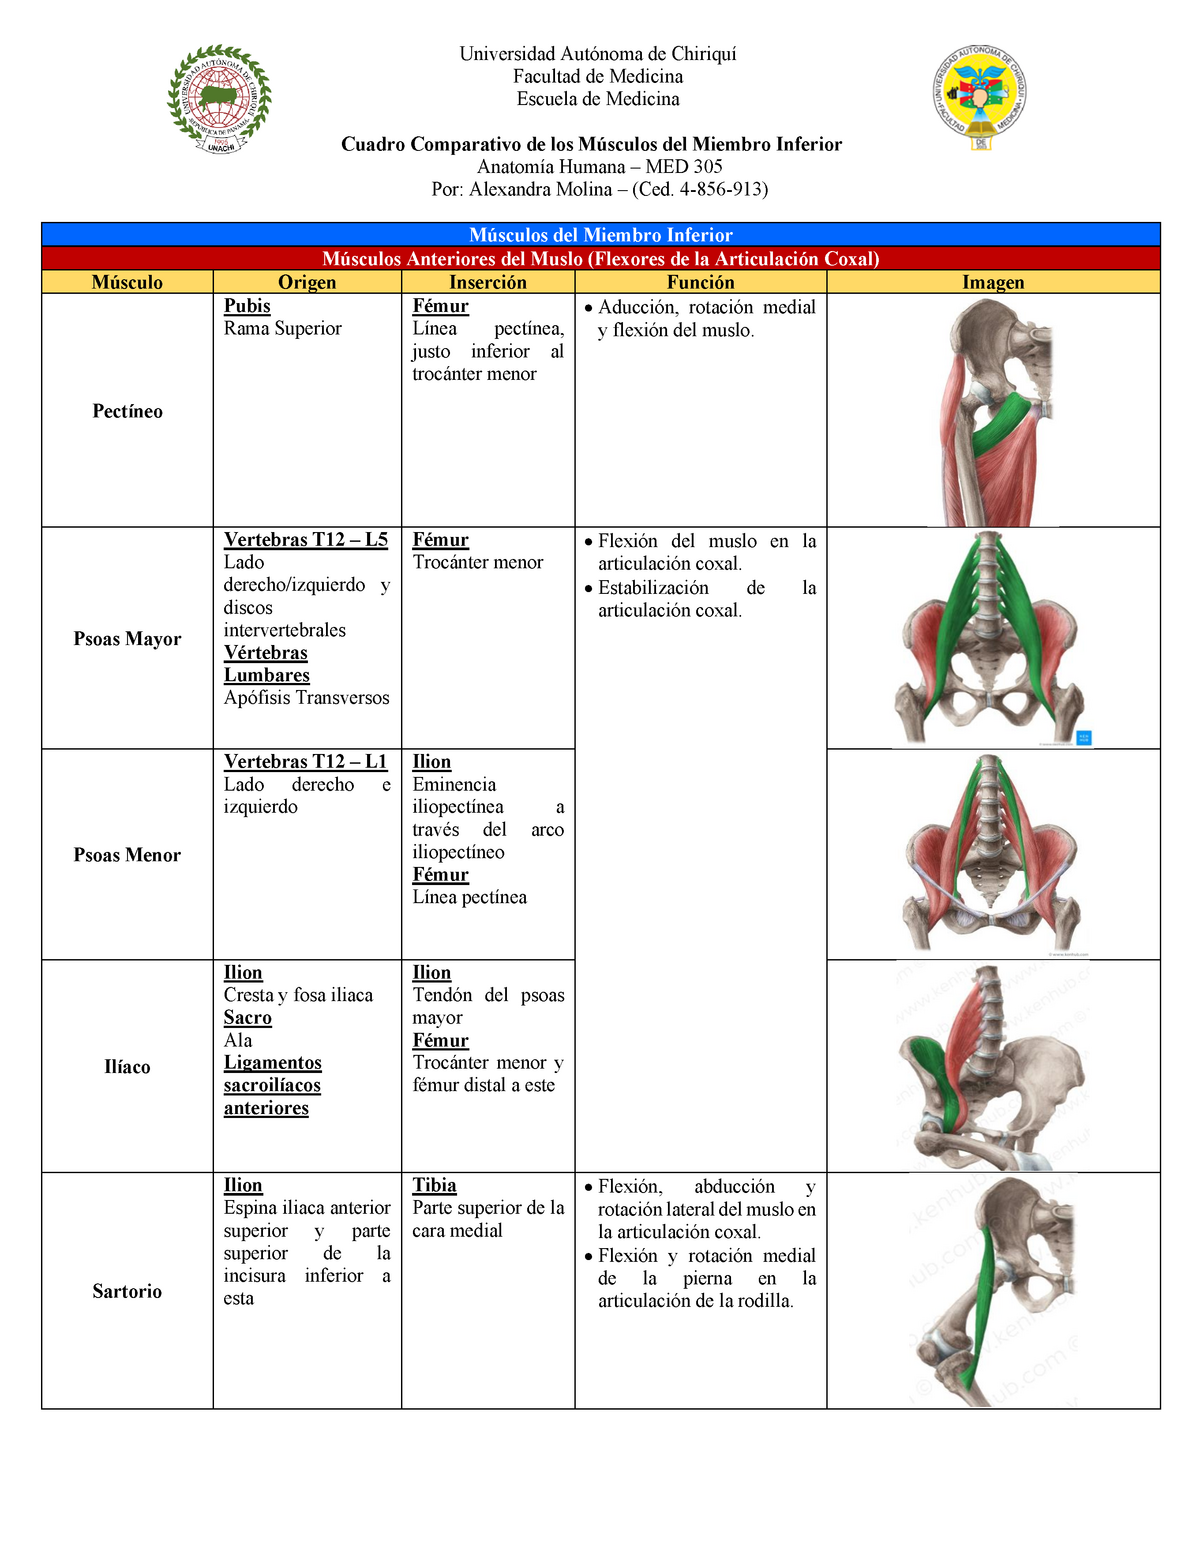 Cuadro De Los Orígenes Inserciones Y Funciones Del Los Músculos De Miembro Inferior Warning 3069